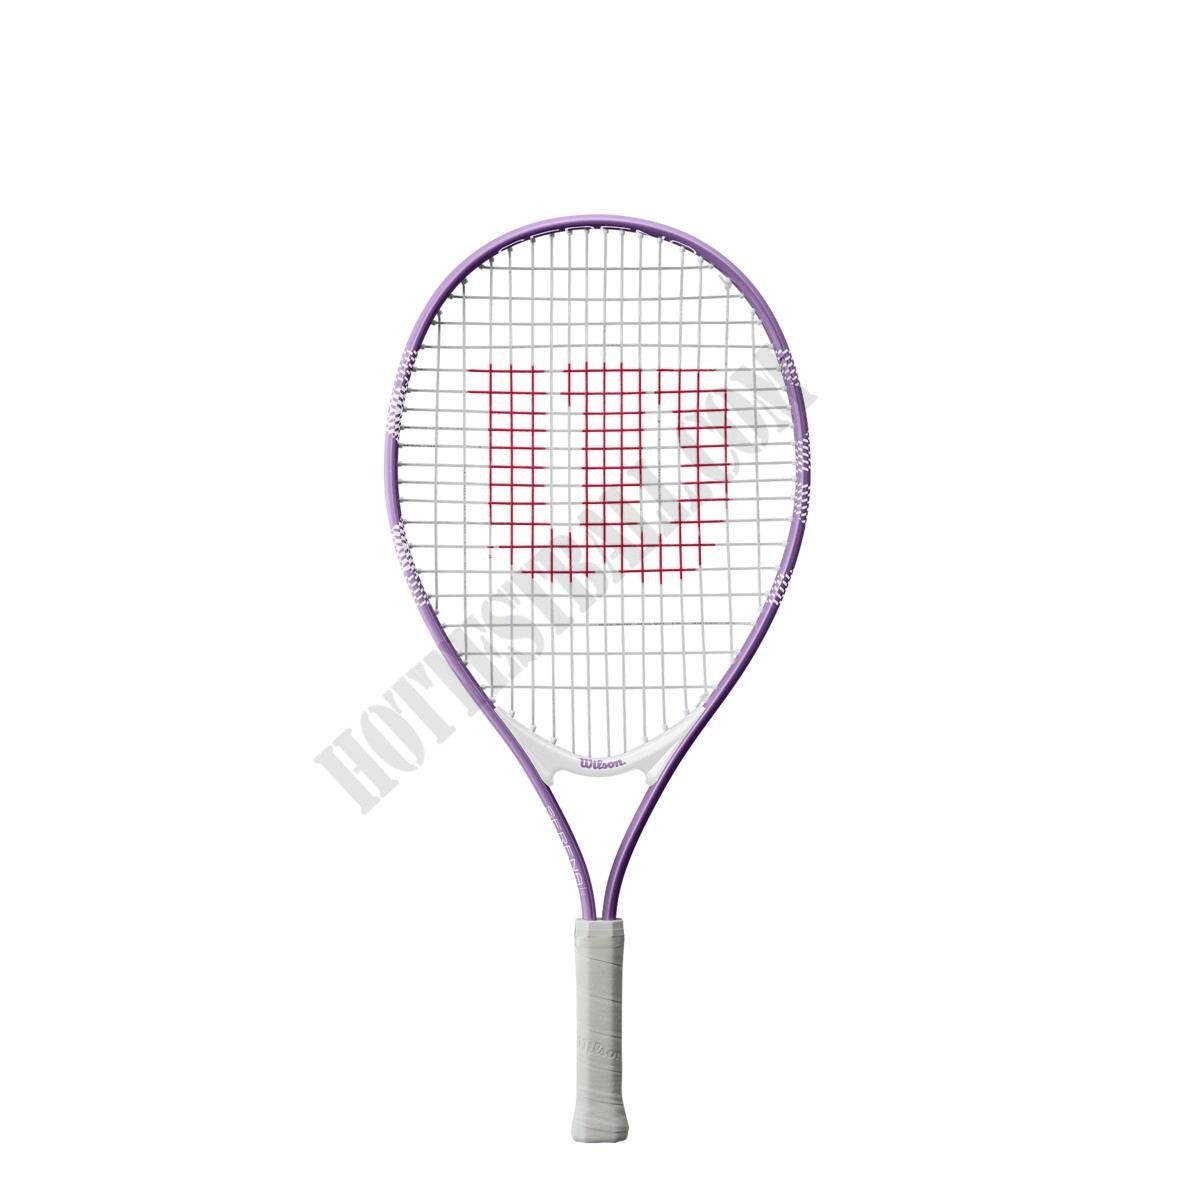 Serena 23 Tennis Racket - Wilson Discount Store - Serena 23 Tennis Racket - Wilson Discount Store